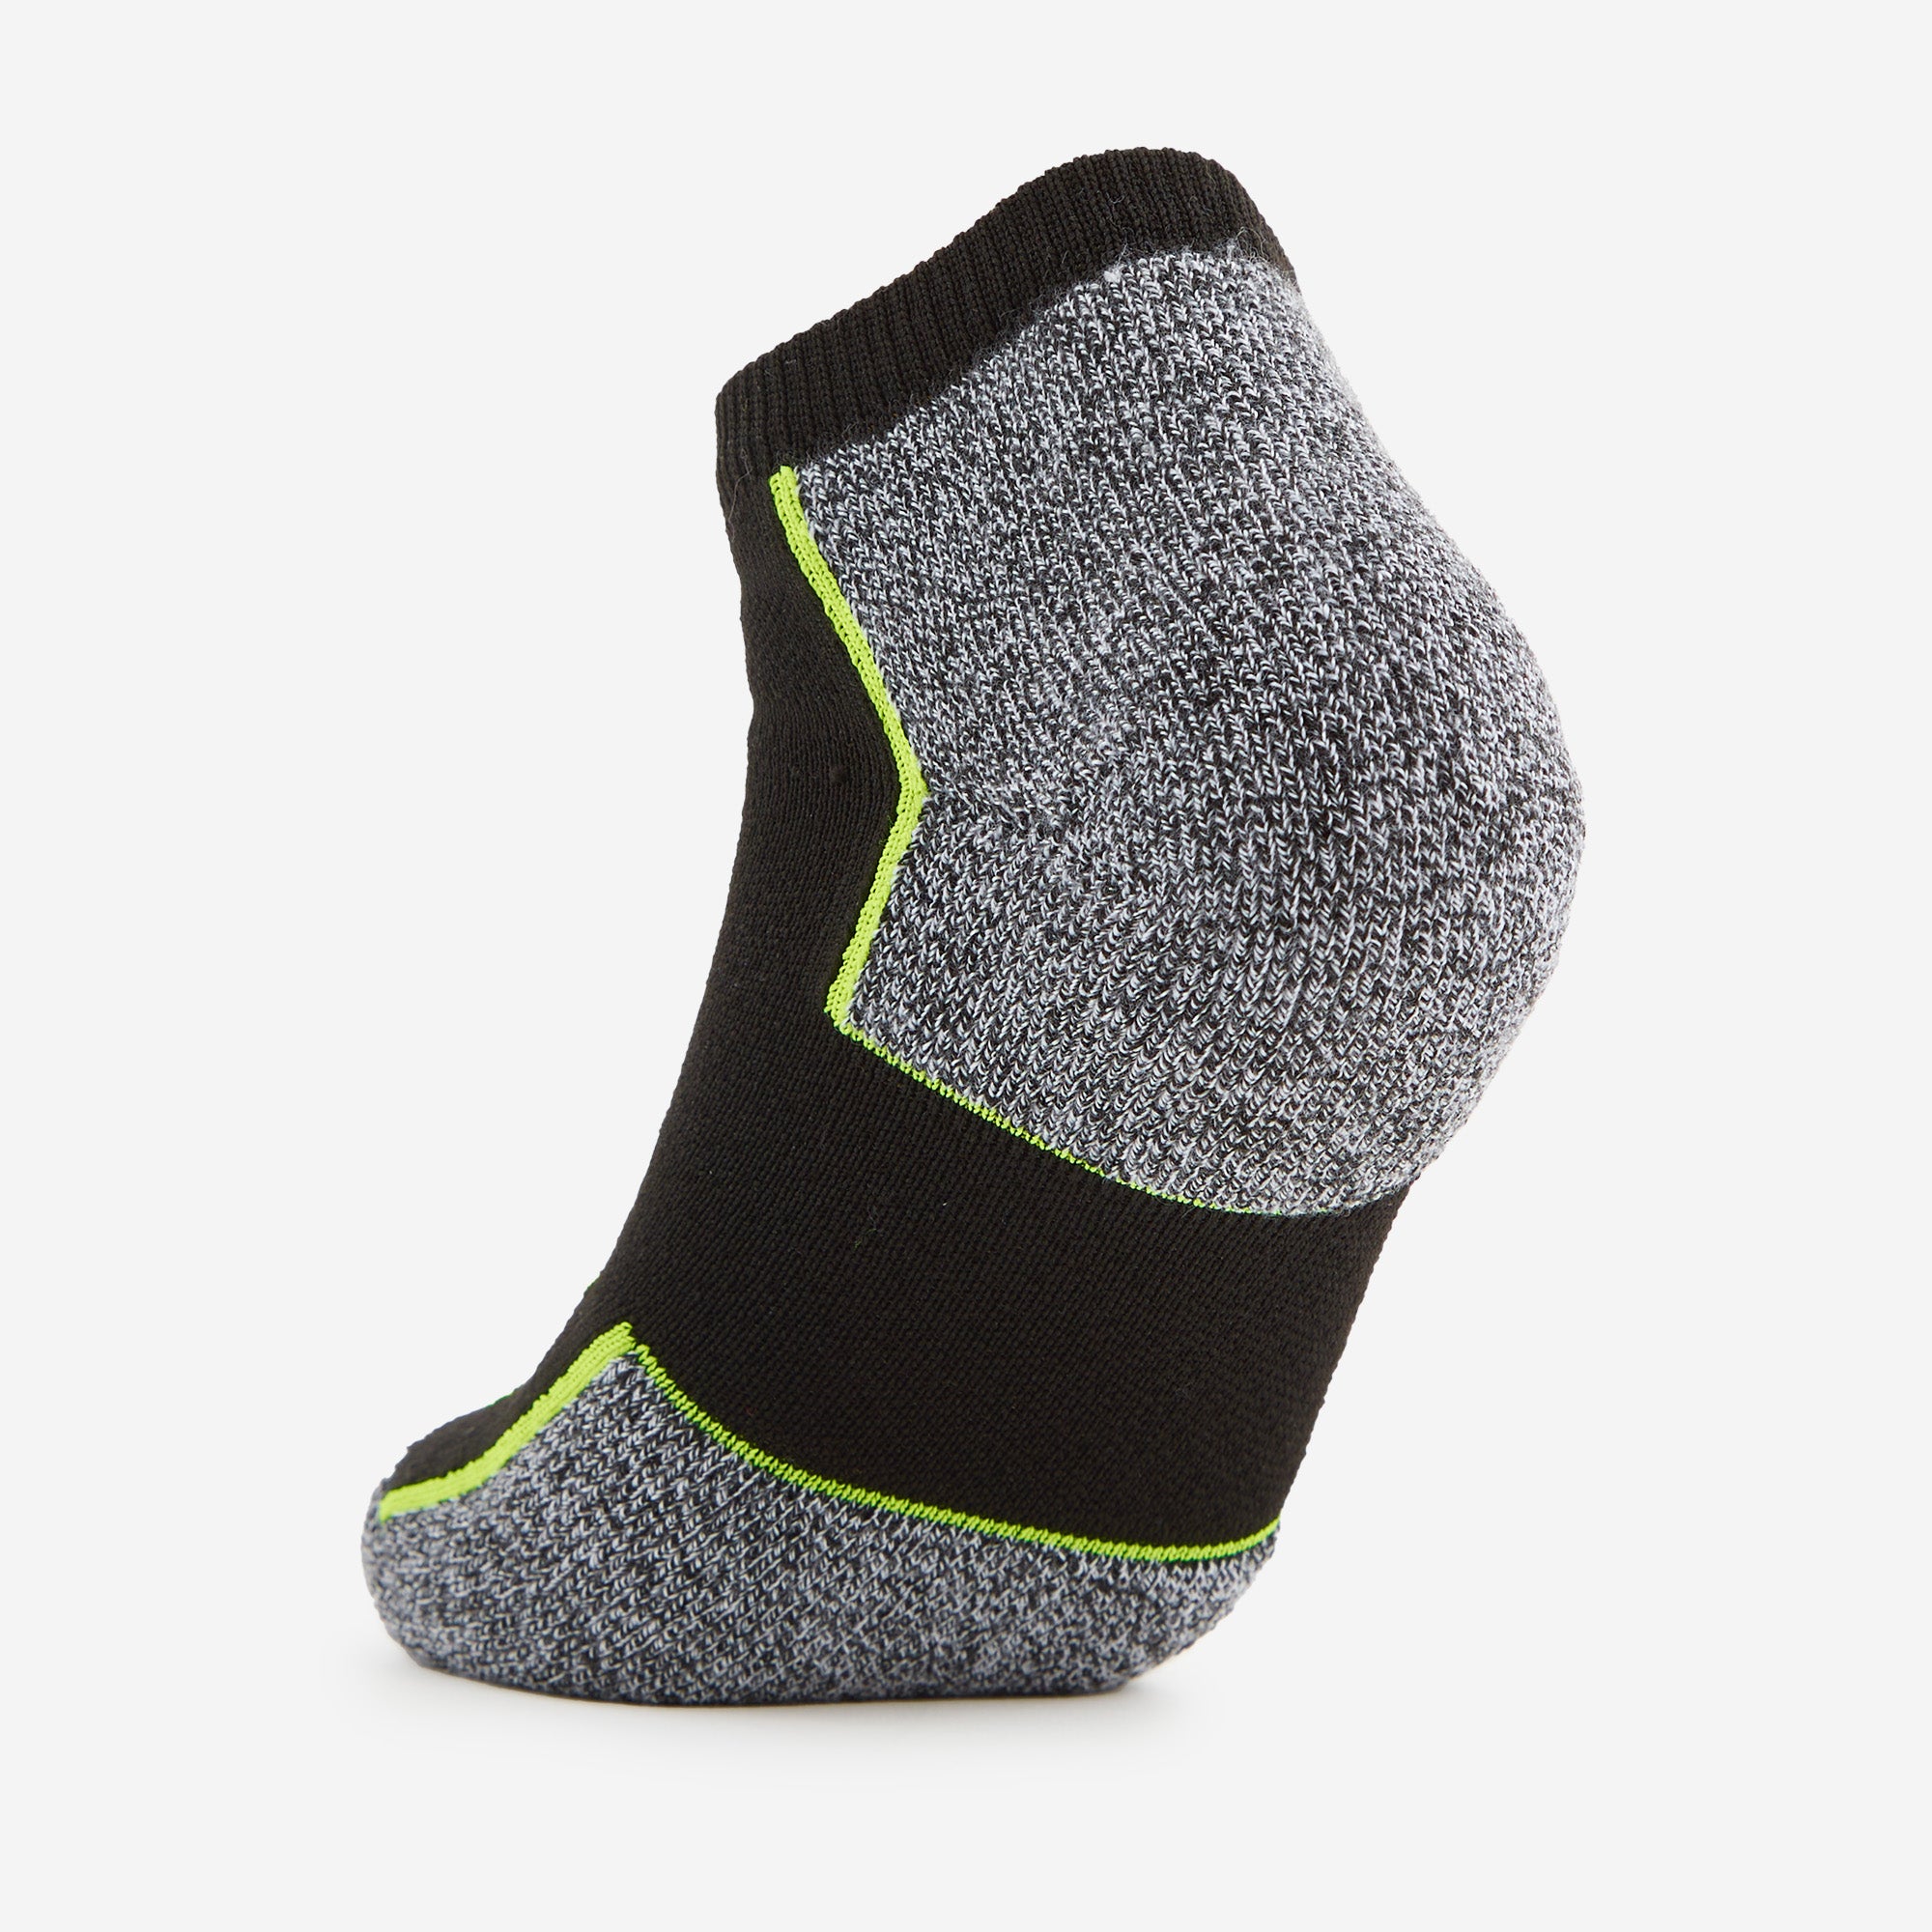 New Balance x Thorlo - Max Cushion Low-Cut Running Socks